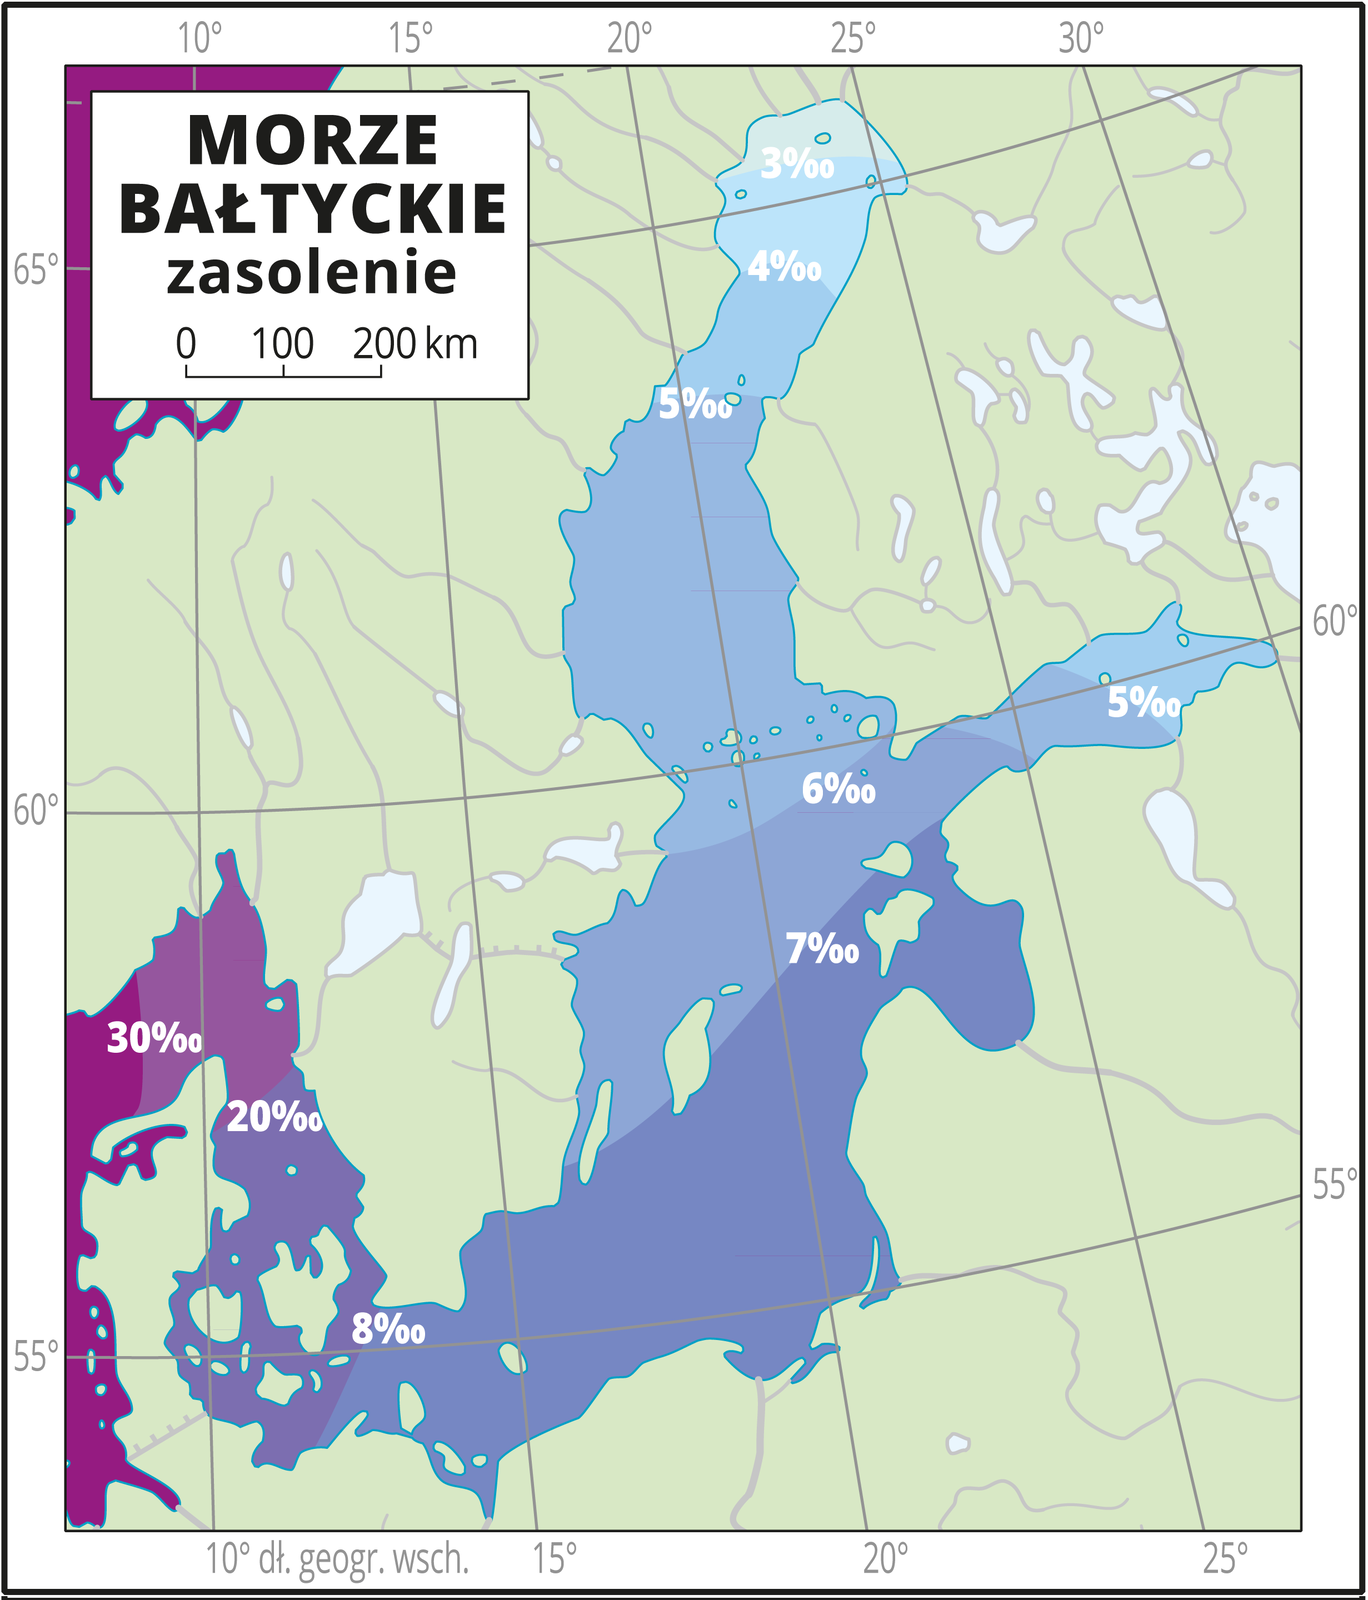 Ilustracja przedstawia mapę Morza Bałtyckiego. Natężeniem koloru niebieskiego przedstawiono zasolenie od trzech promili na północy do ośmiu promili w południowej części Morza Bałtyckiego (u wybrzeży Polski). W Cieśninach Duńskich zasolenie wynosi 20–30 promili. Mapa pokryta jest równoleżnikami i południkami. Dookoła mapy w białej ramce opisano współrzędne geograficzne co pięć stopni. W legendzie umieszczono i opisano kolory użyte na mapie.